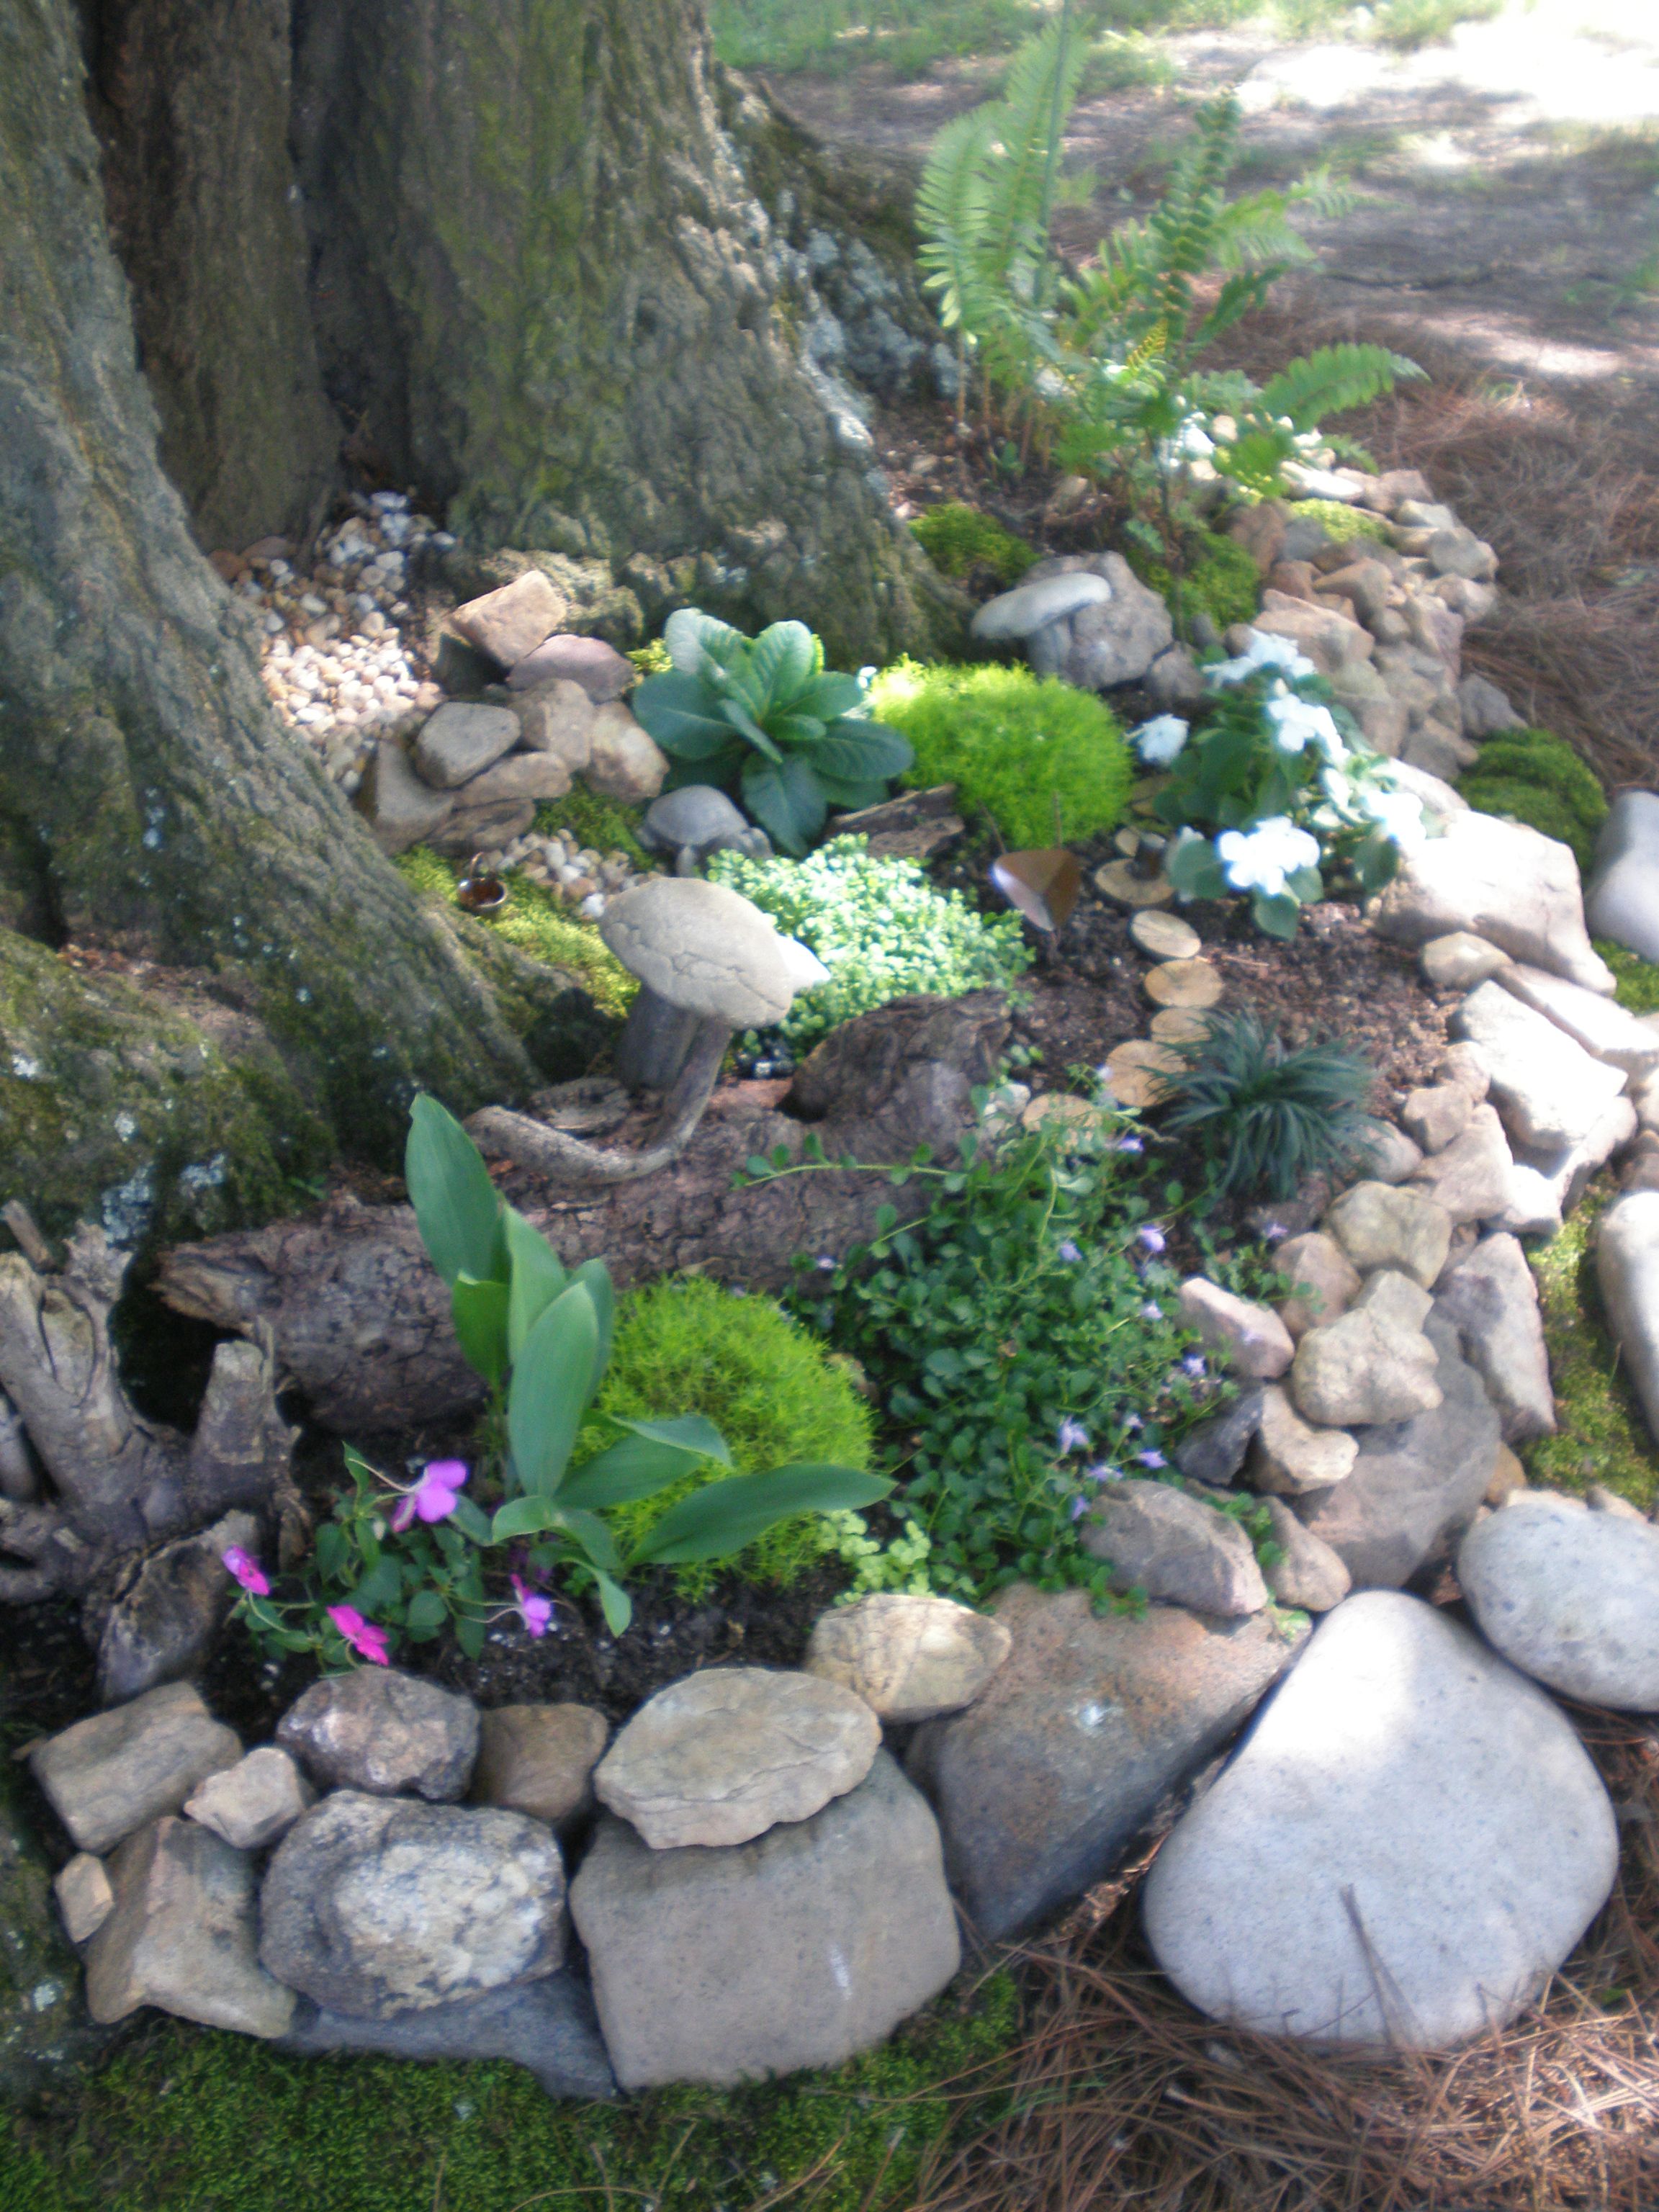 Rocks Garden Landscape Ideas